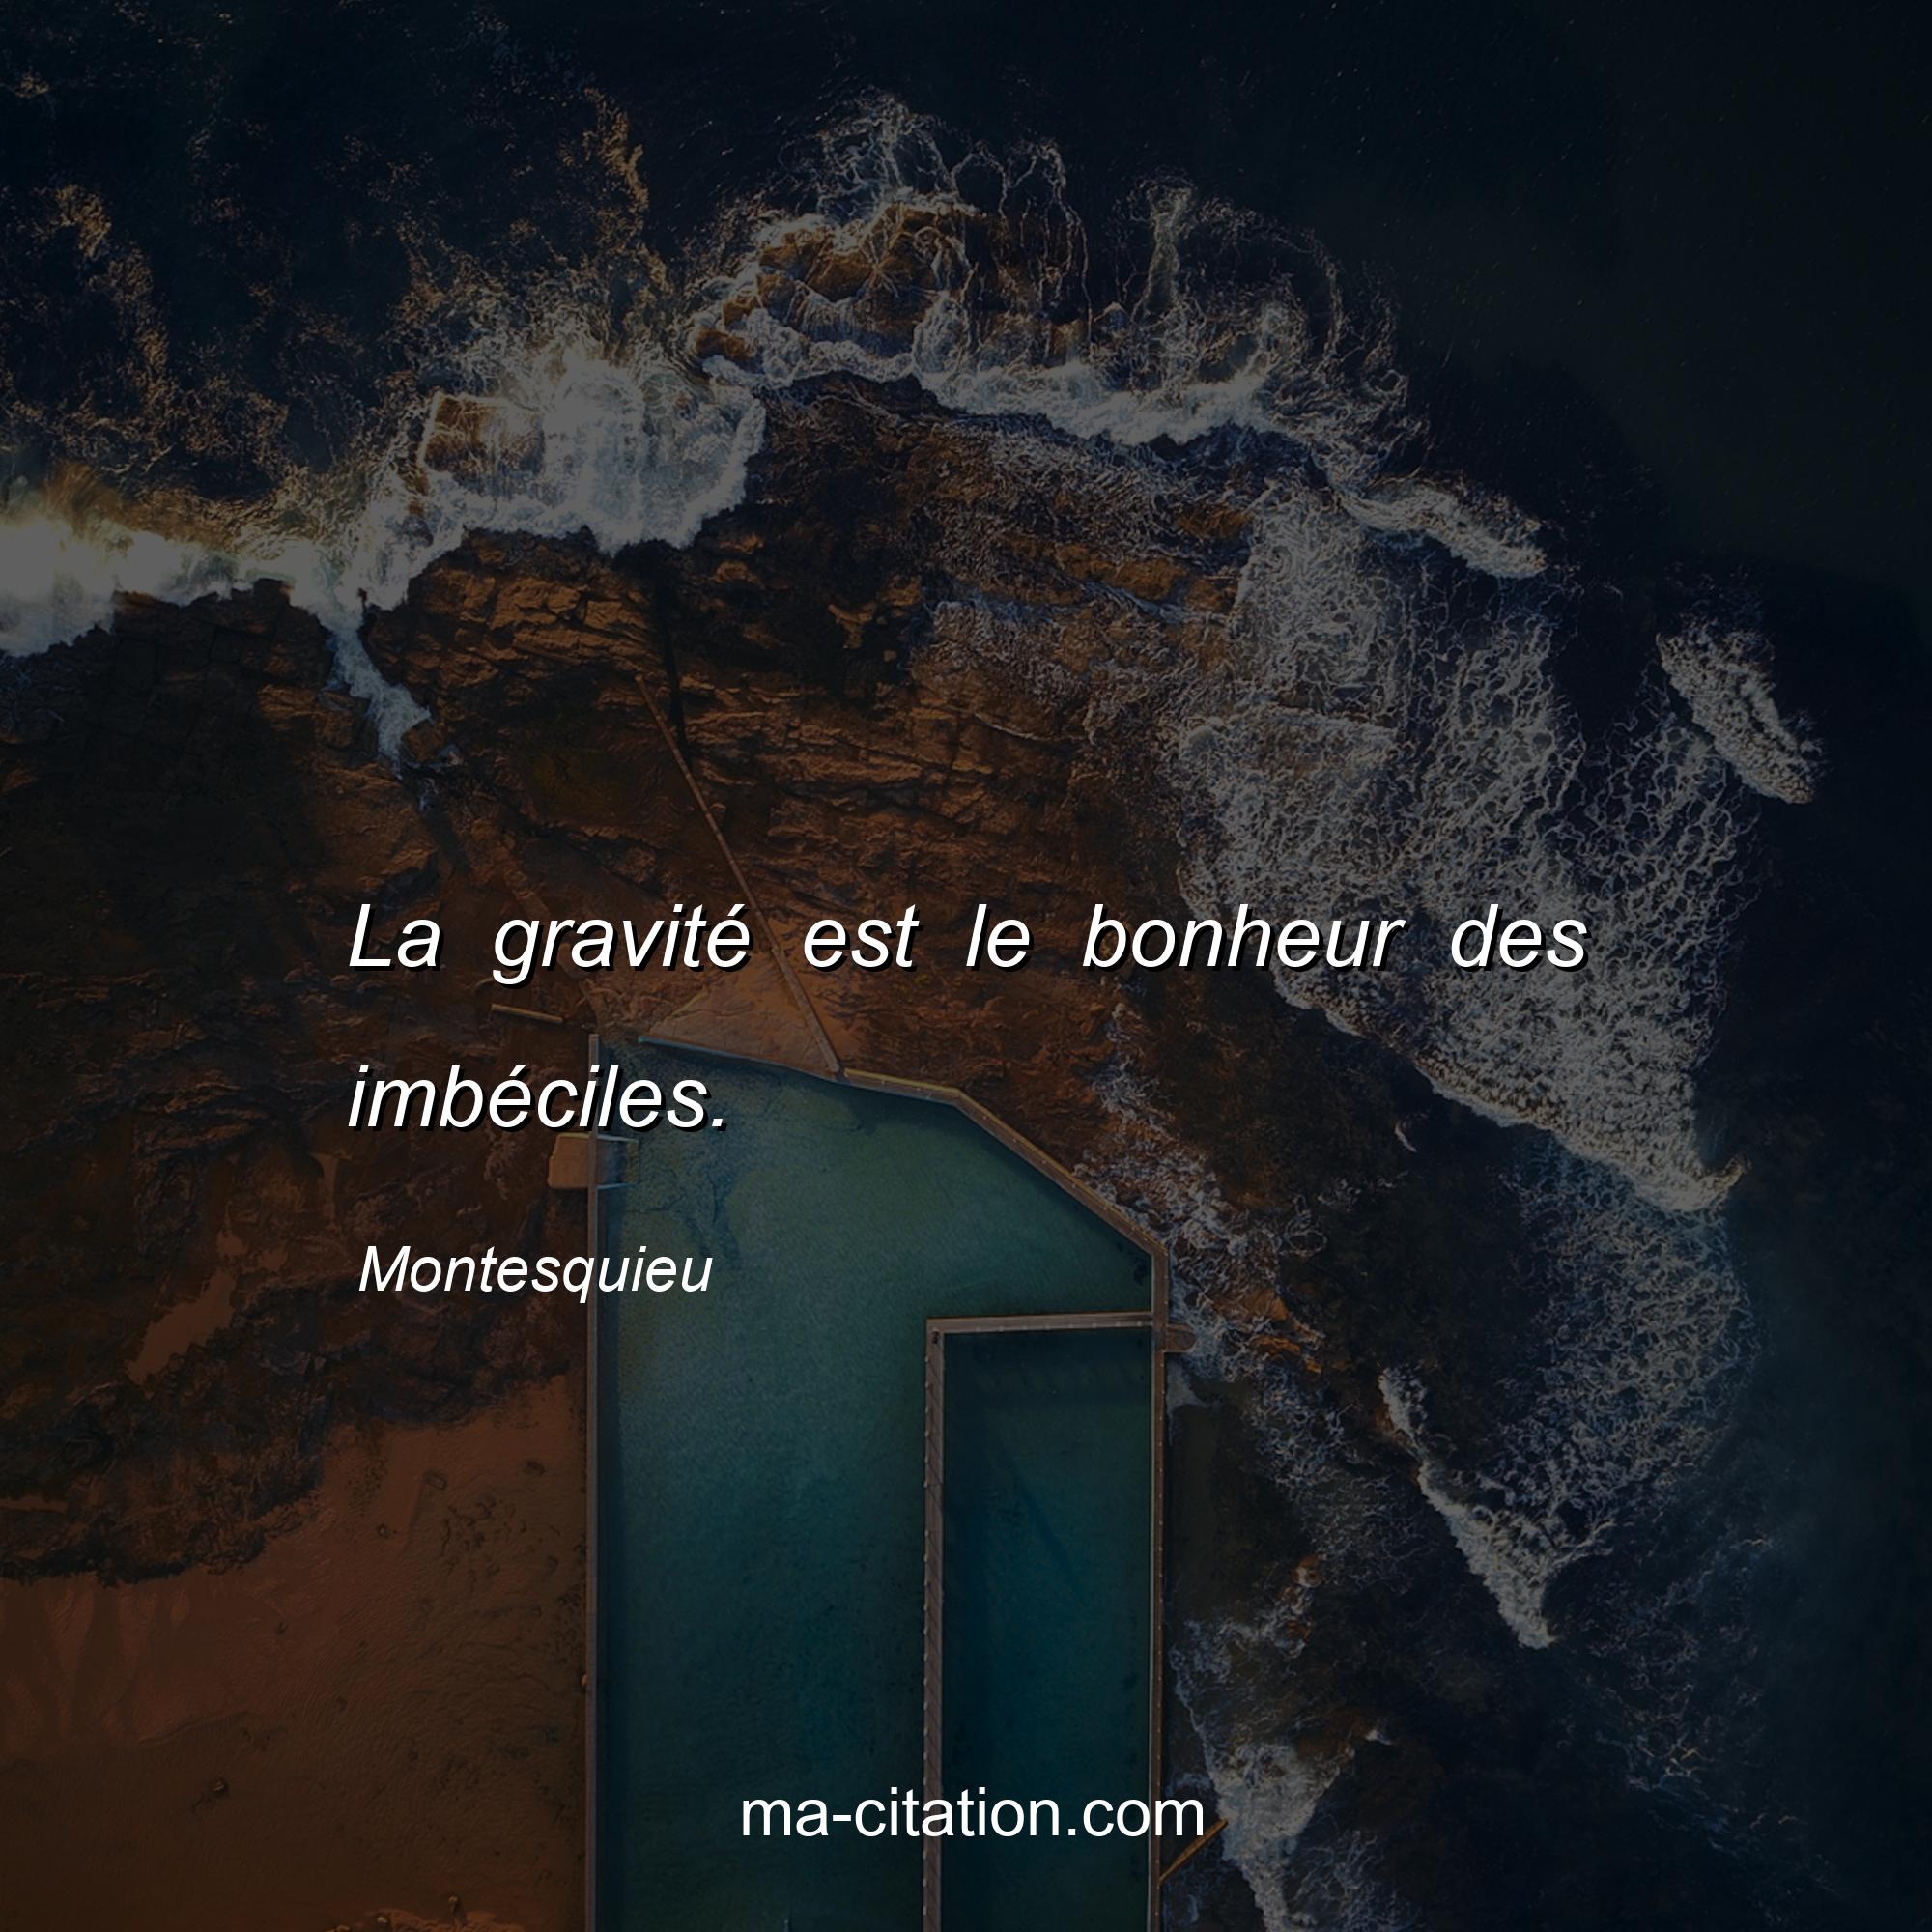 Montesquieu : La gravité est le bonheur des imbéciles.